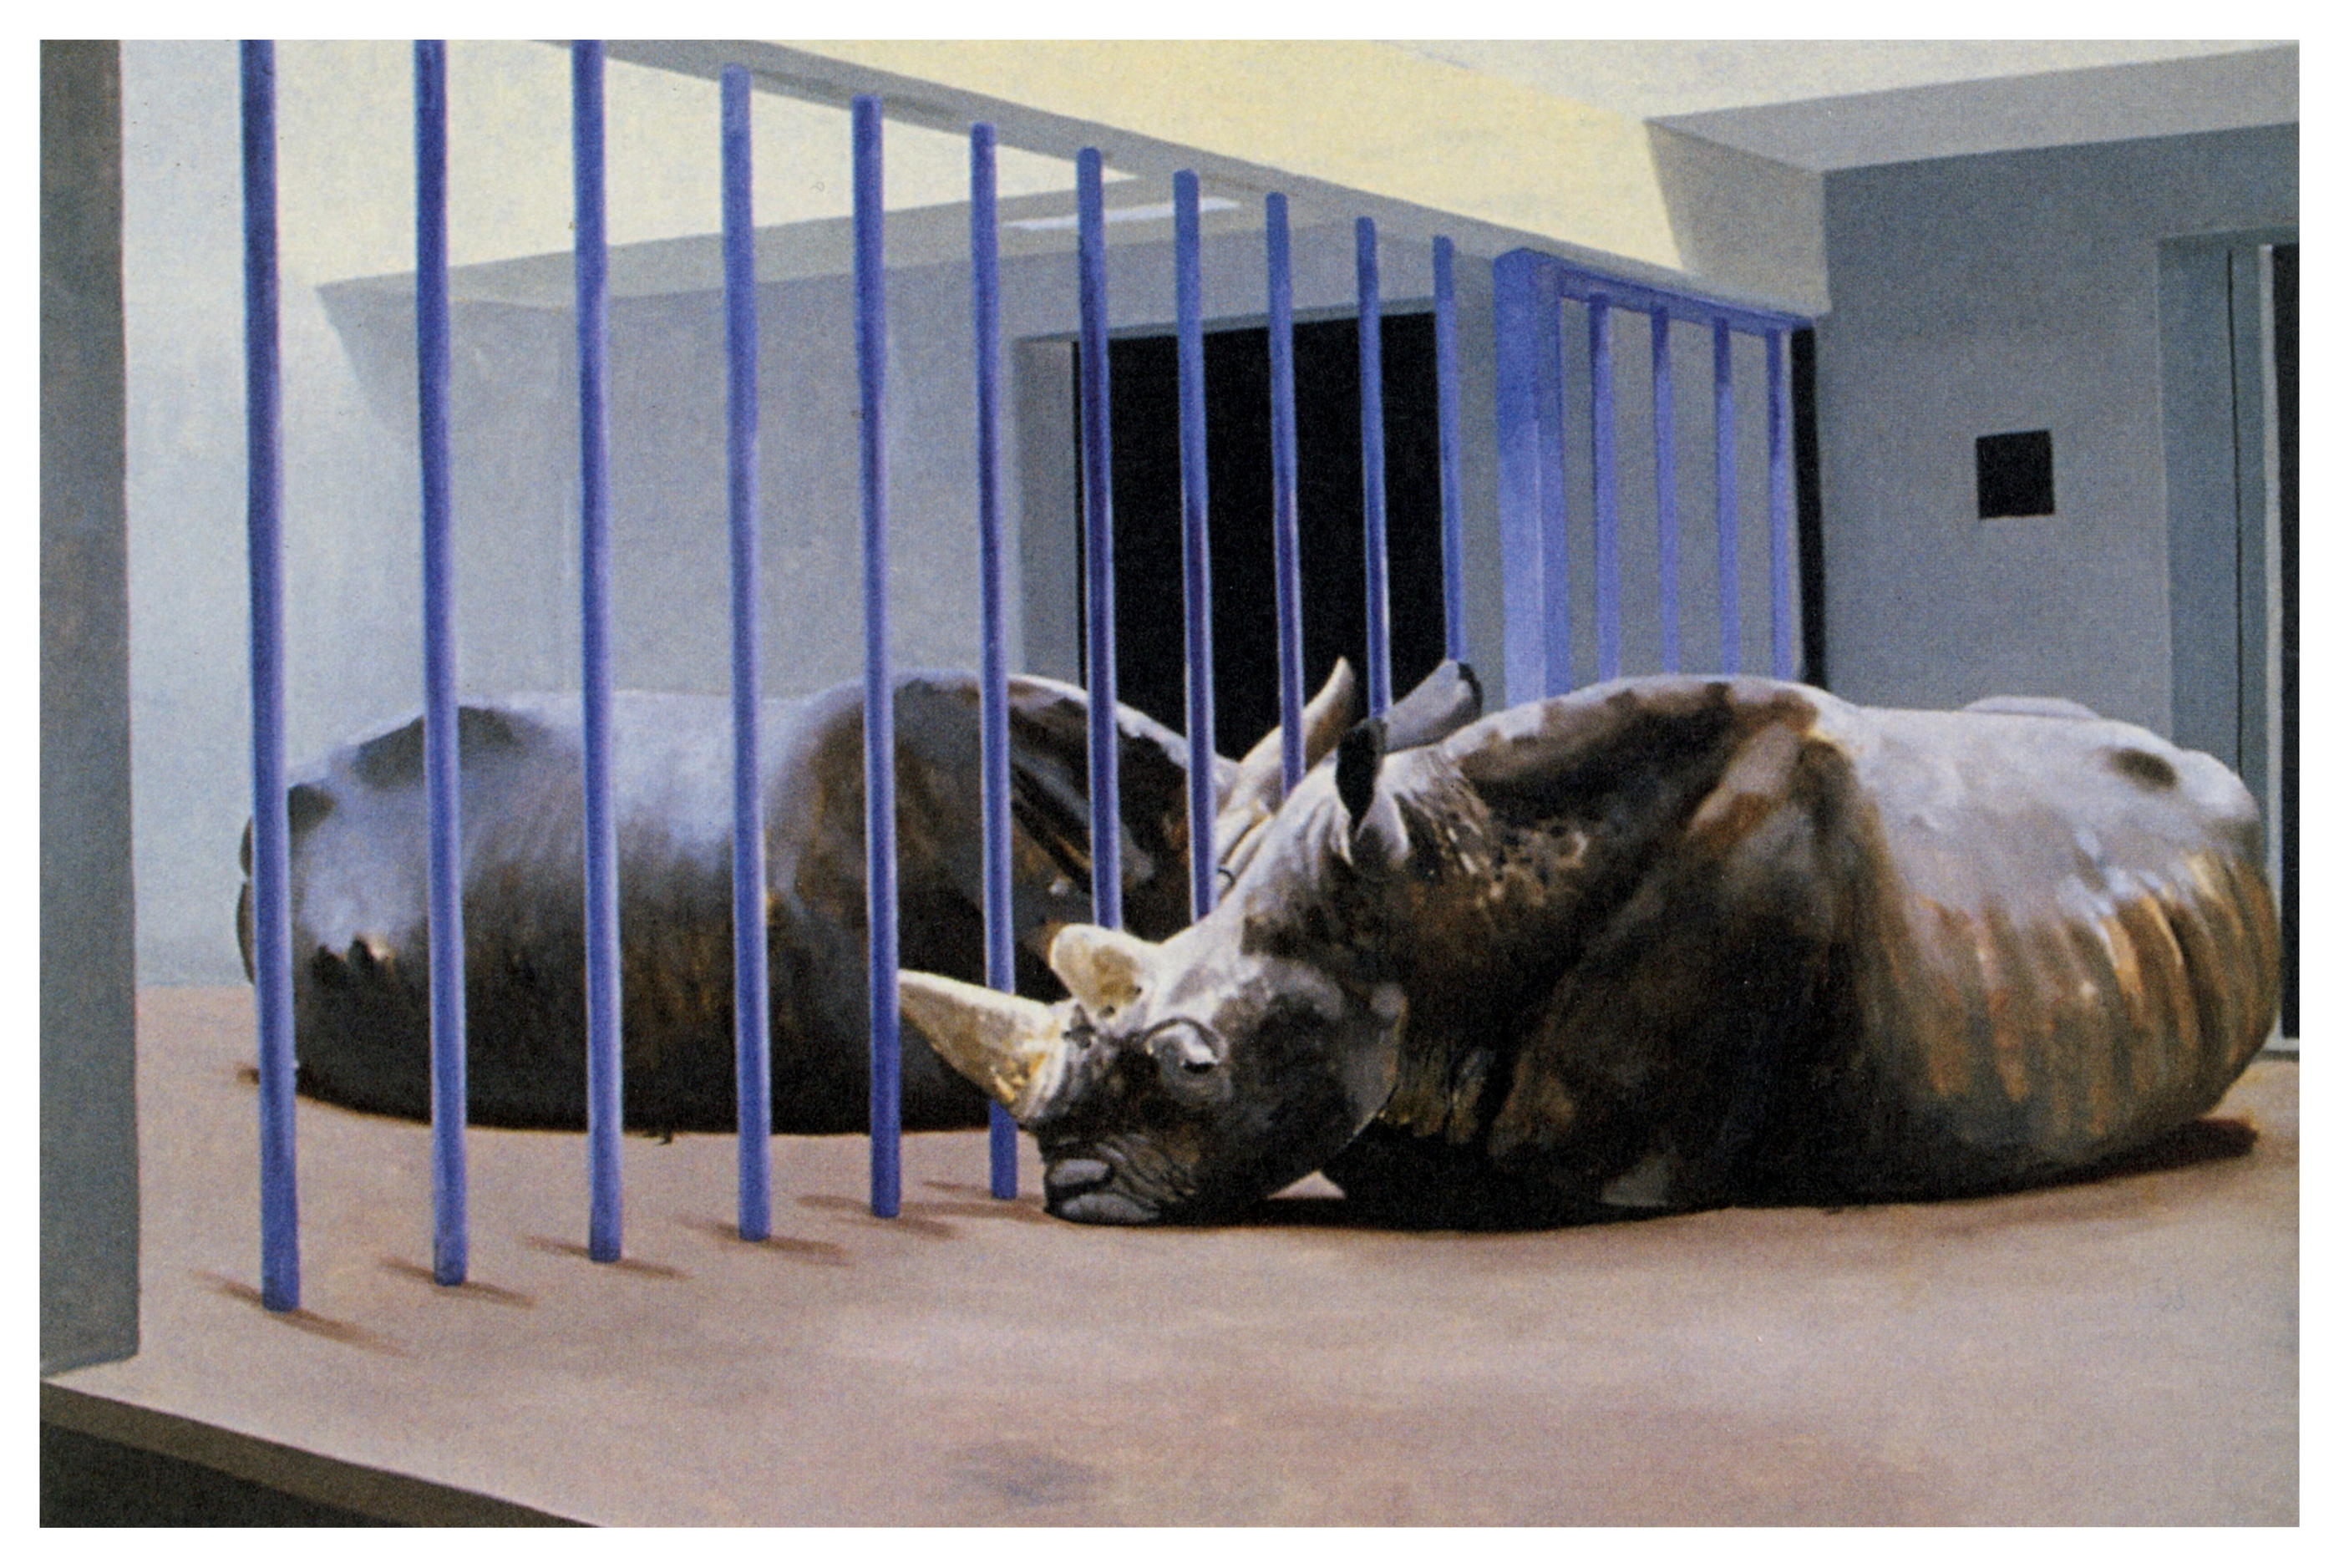 Gilles Aillaud est notamment connu pour avoir interrogé la prise en compte du bien-être animal dans les zoos, comme ici dans son tableau «Rhinocéros» (1979). Cnap/Adagp